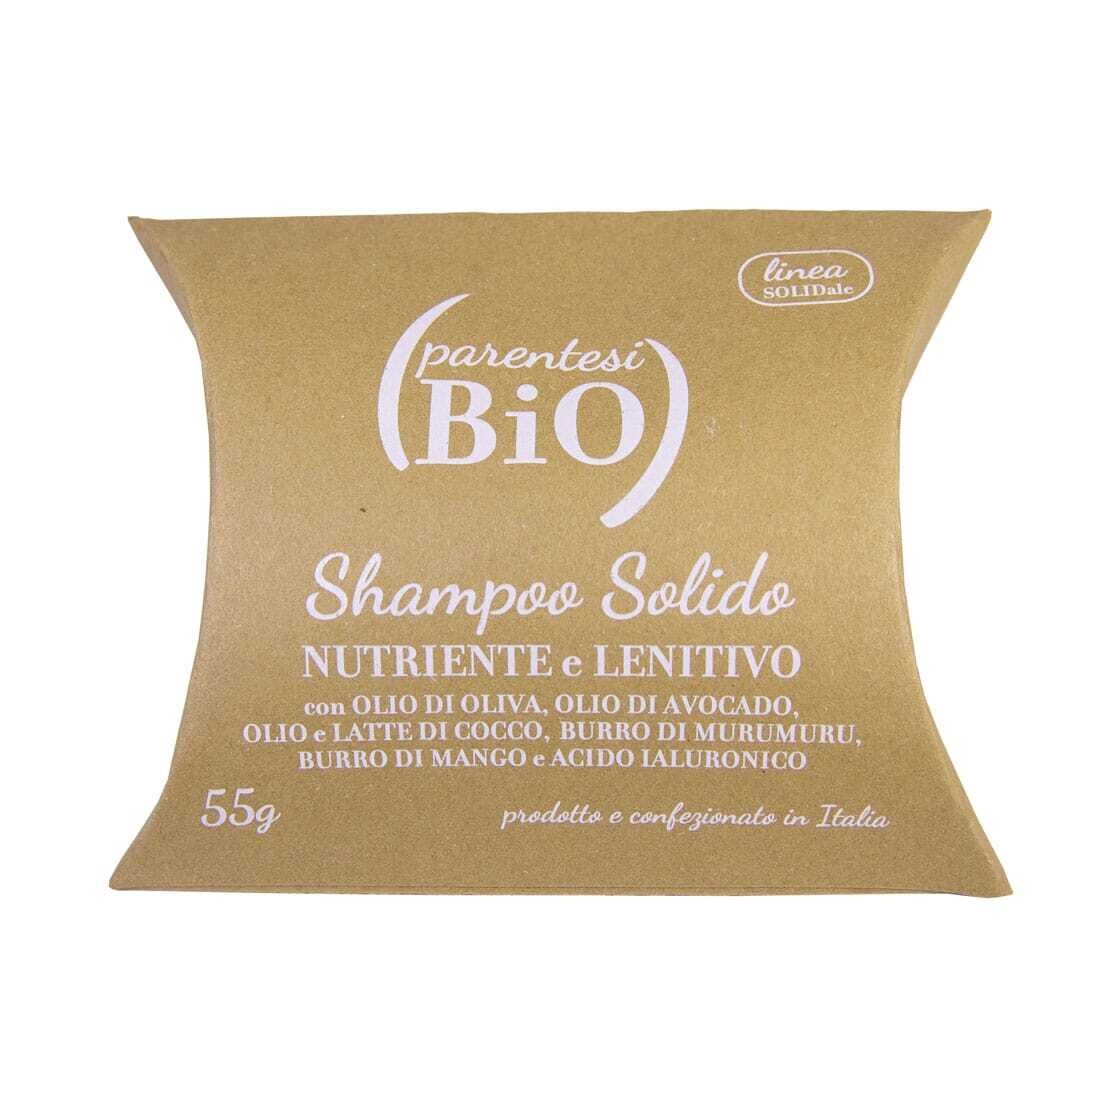 Shampoo Solido Nutriente e Lenitivo - ParentesiBio